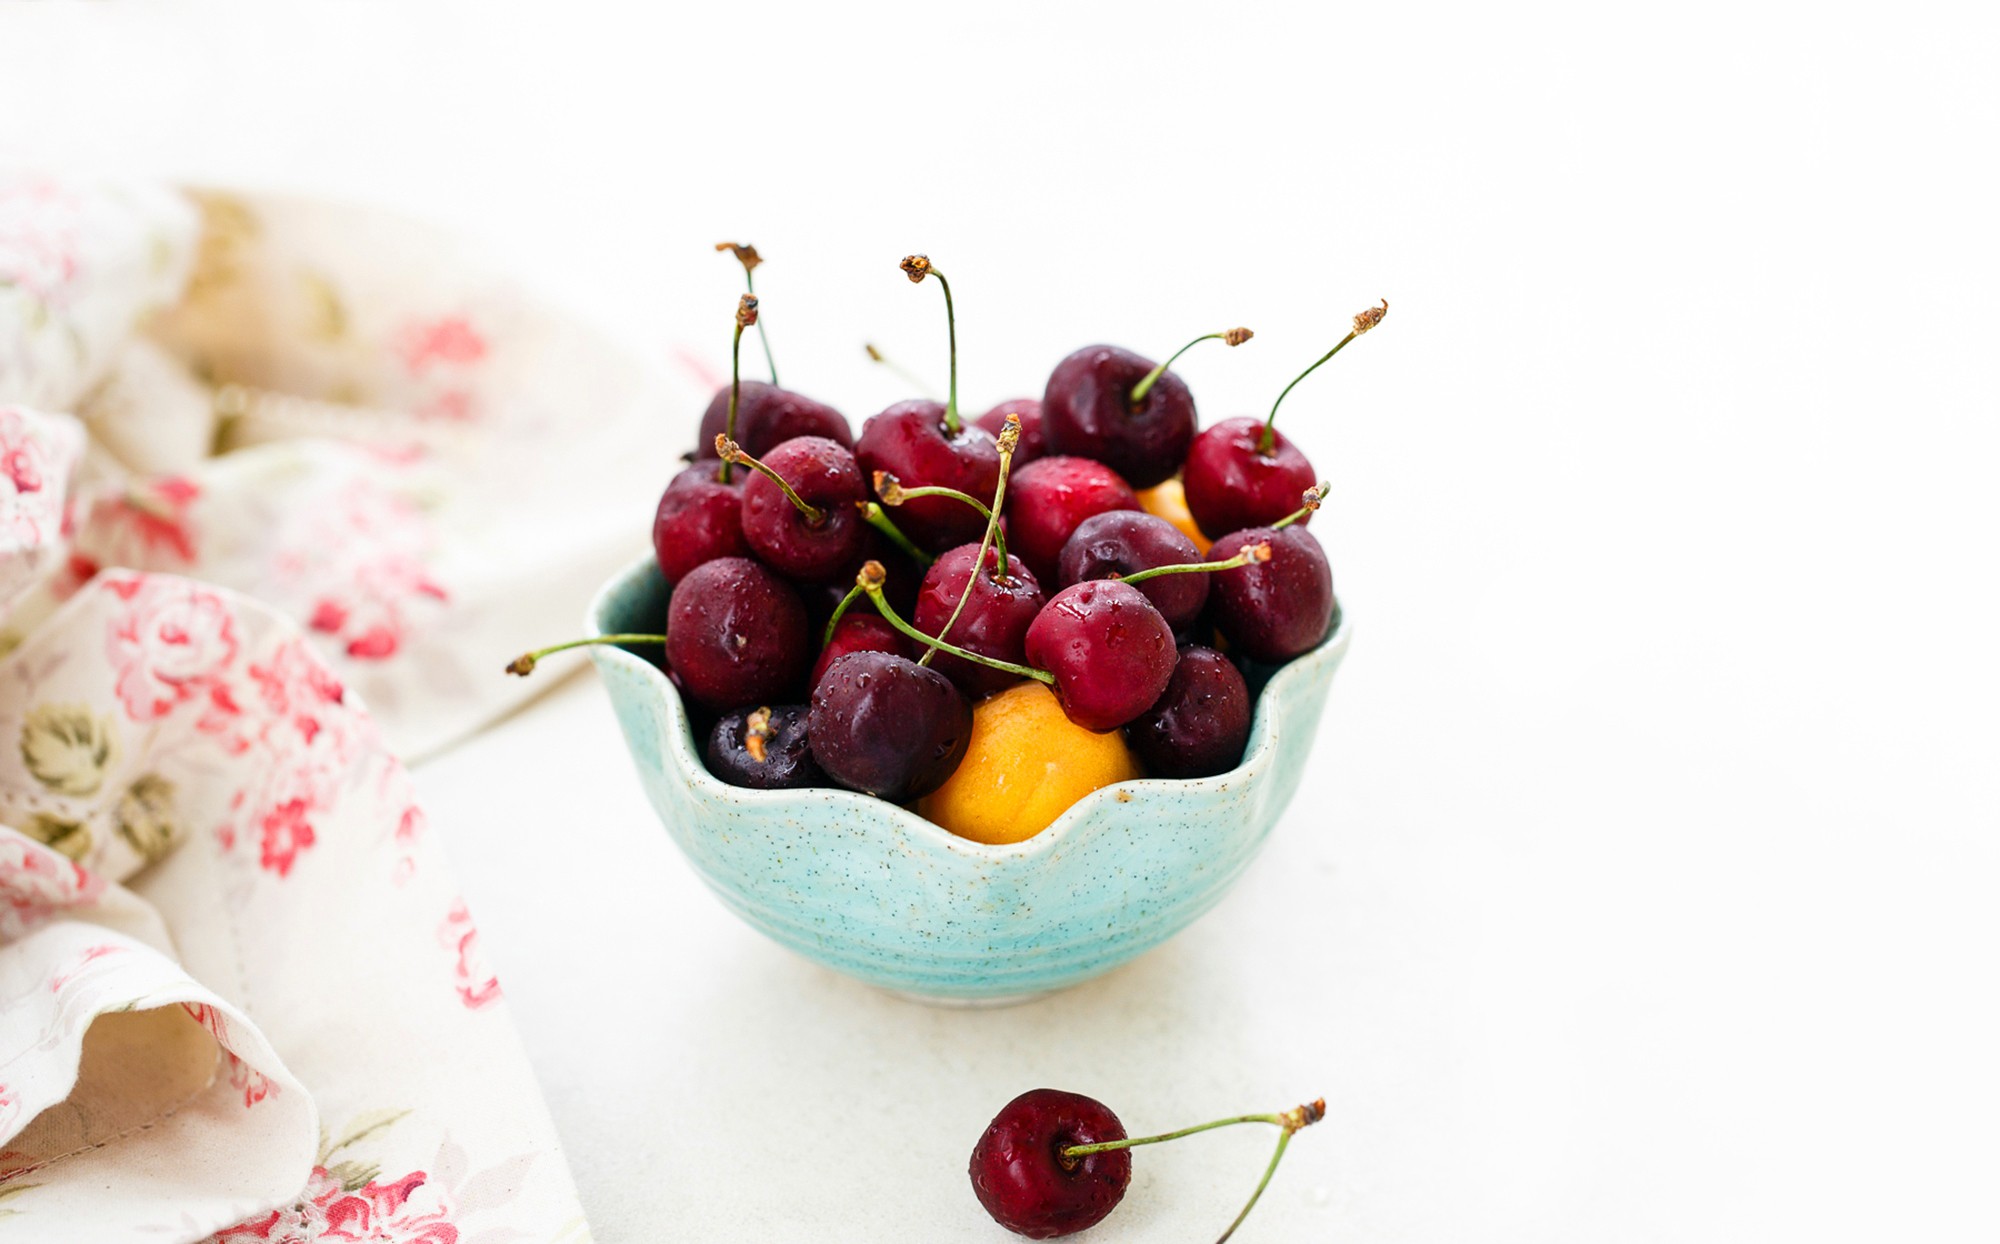 General 2000x1244 fruit cherries bowls food berries